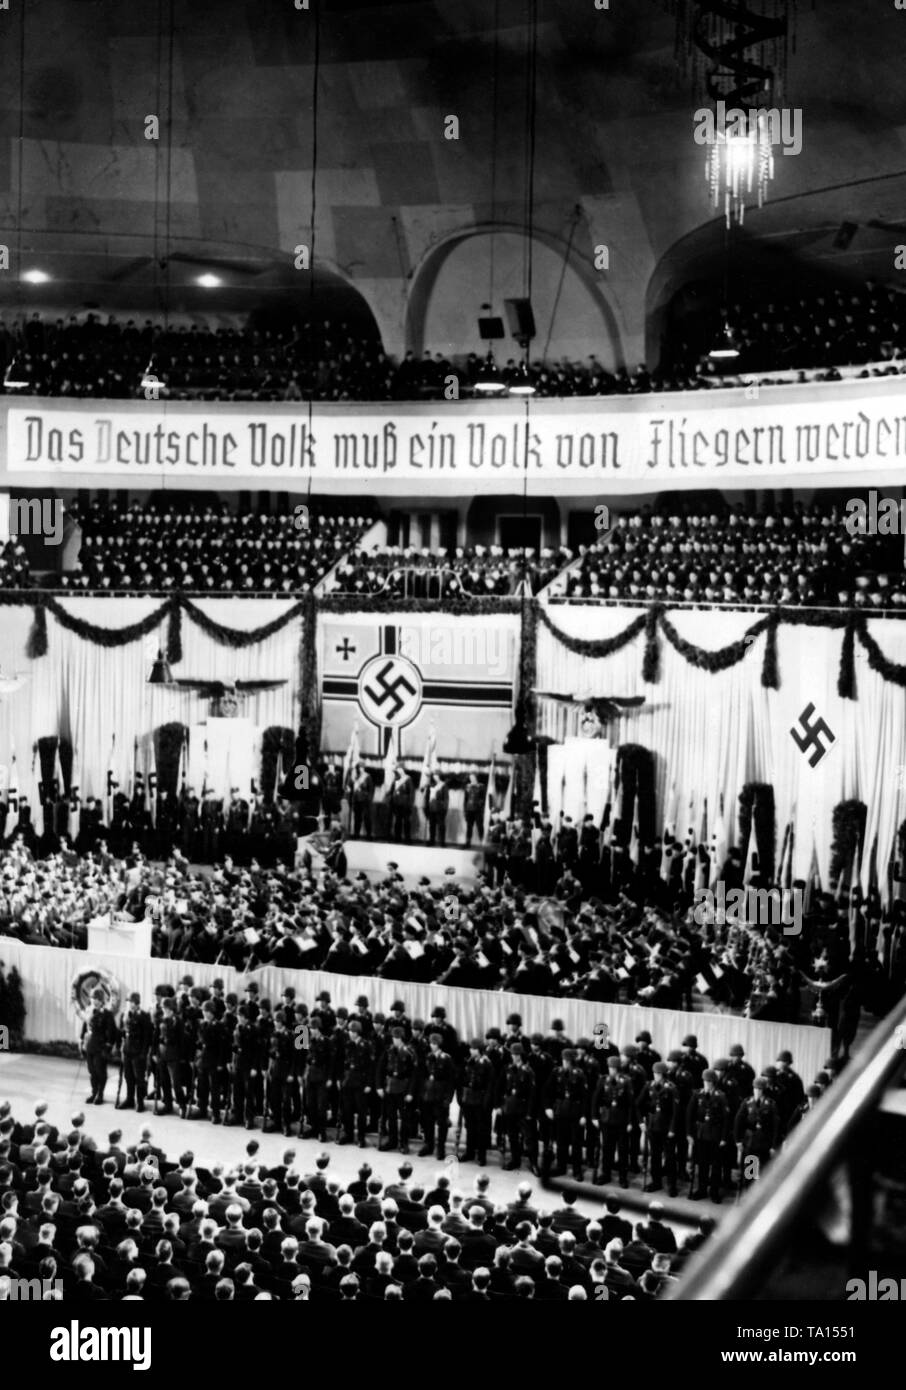 Blick auf den Berliner Sportpalast während der Rallye der Luftwaffe Propaganda Woche. Reichsmarschall Hermann Göring hatte diesen Fall bestellt. Im Hintergrund, ein Banner mit der Aufschrift "Das Deutsche Volk muss ein Volk von Fliegern werden". Stockfoto